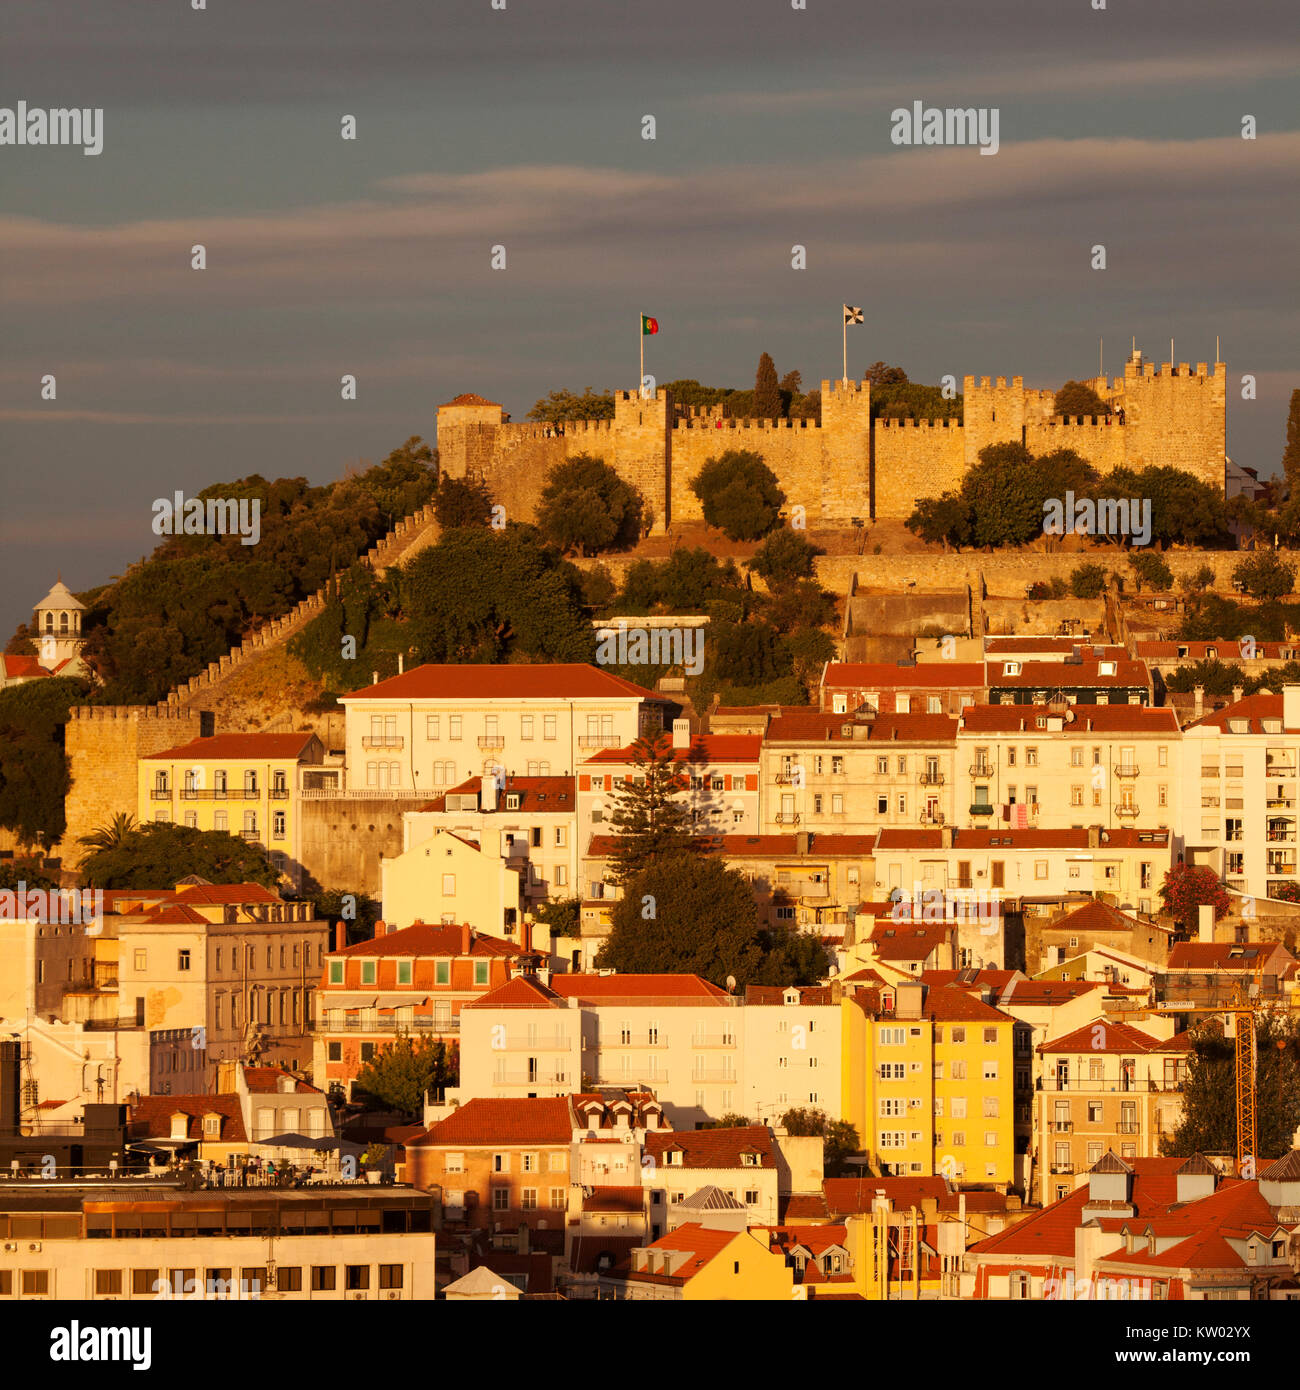 Die Burg von St George (Castelo de São Jorge) in Lissabon, Portugal. Die hilltop Festung hat maurische Ursprünge. Stockfoto